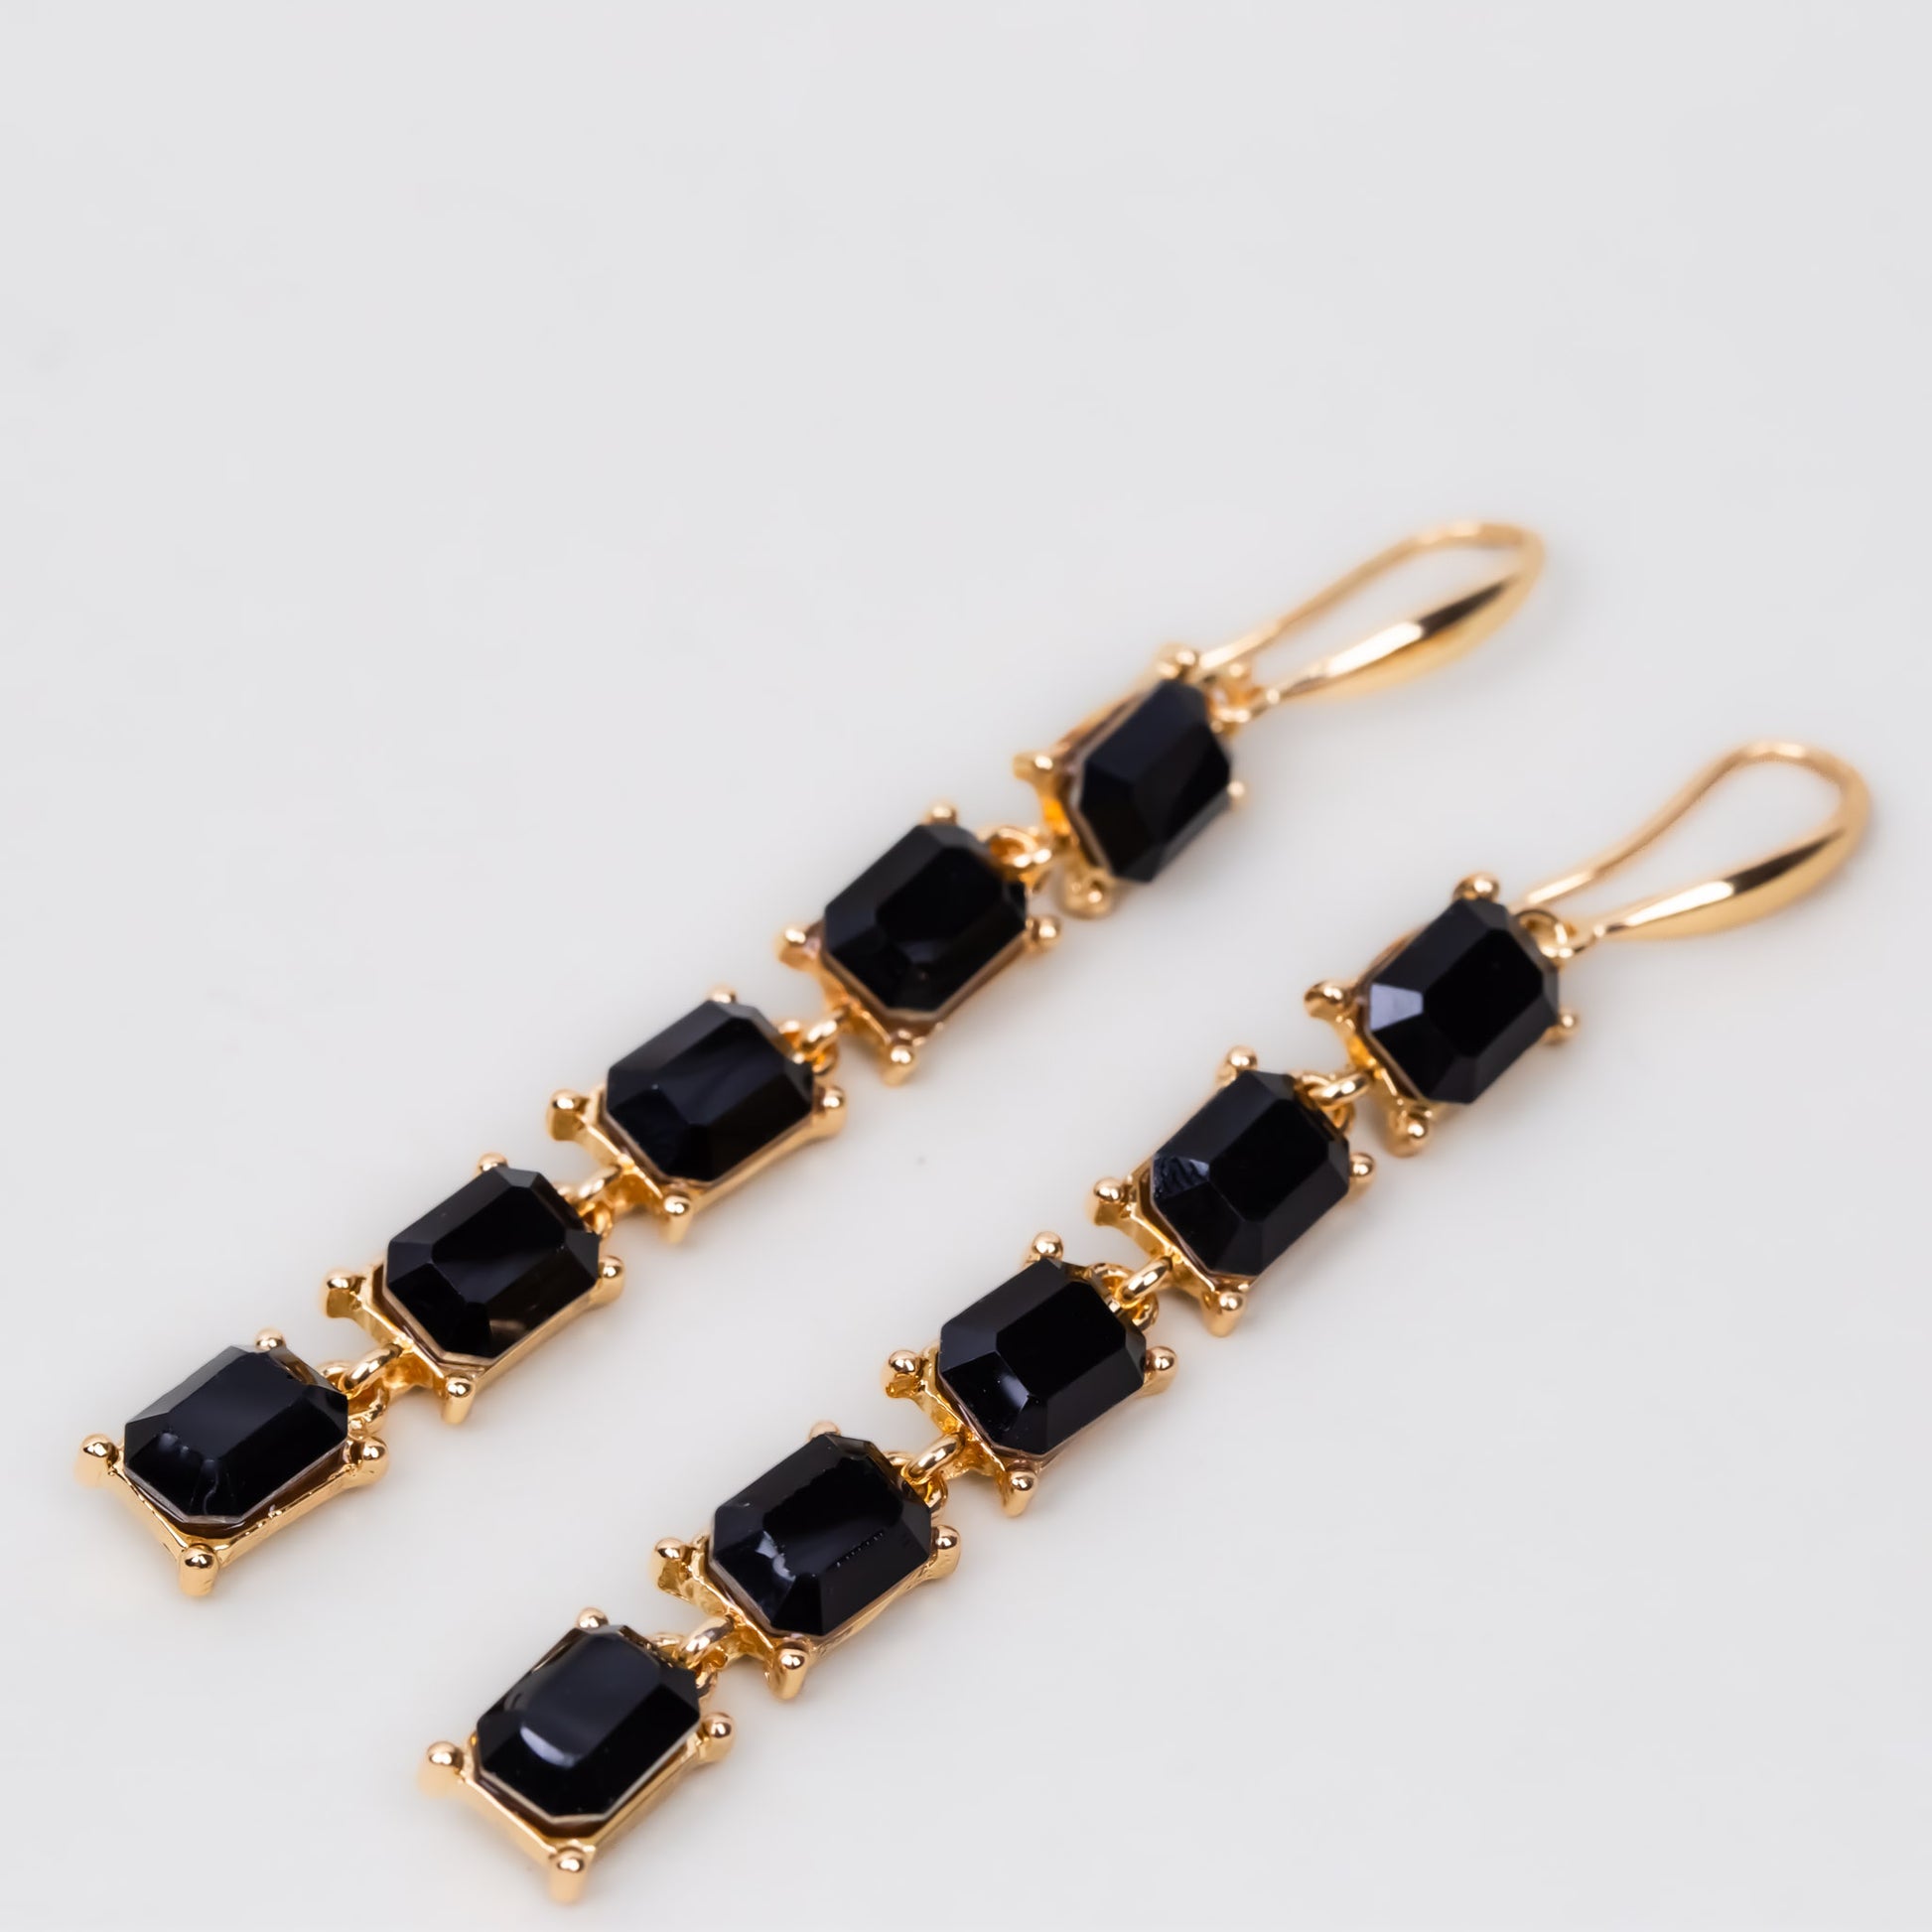 Cercei lungi eleganți pe lanț cu pietre colorate - Negru, Auriu